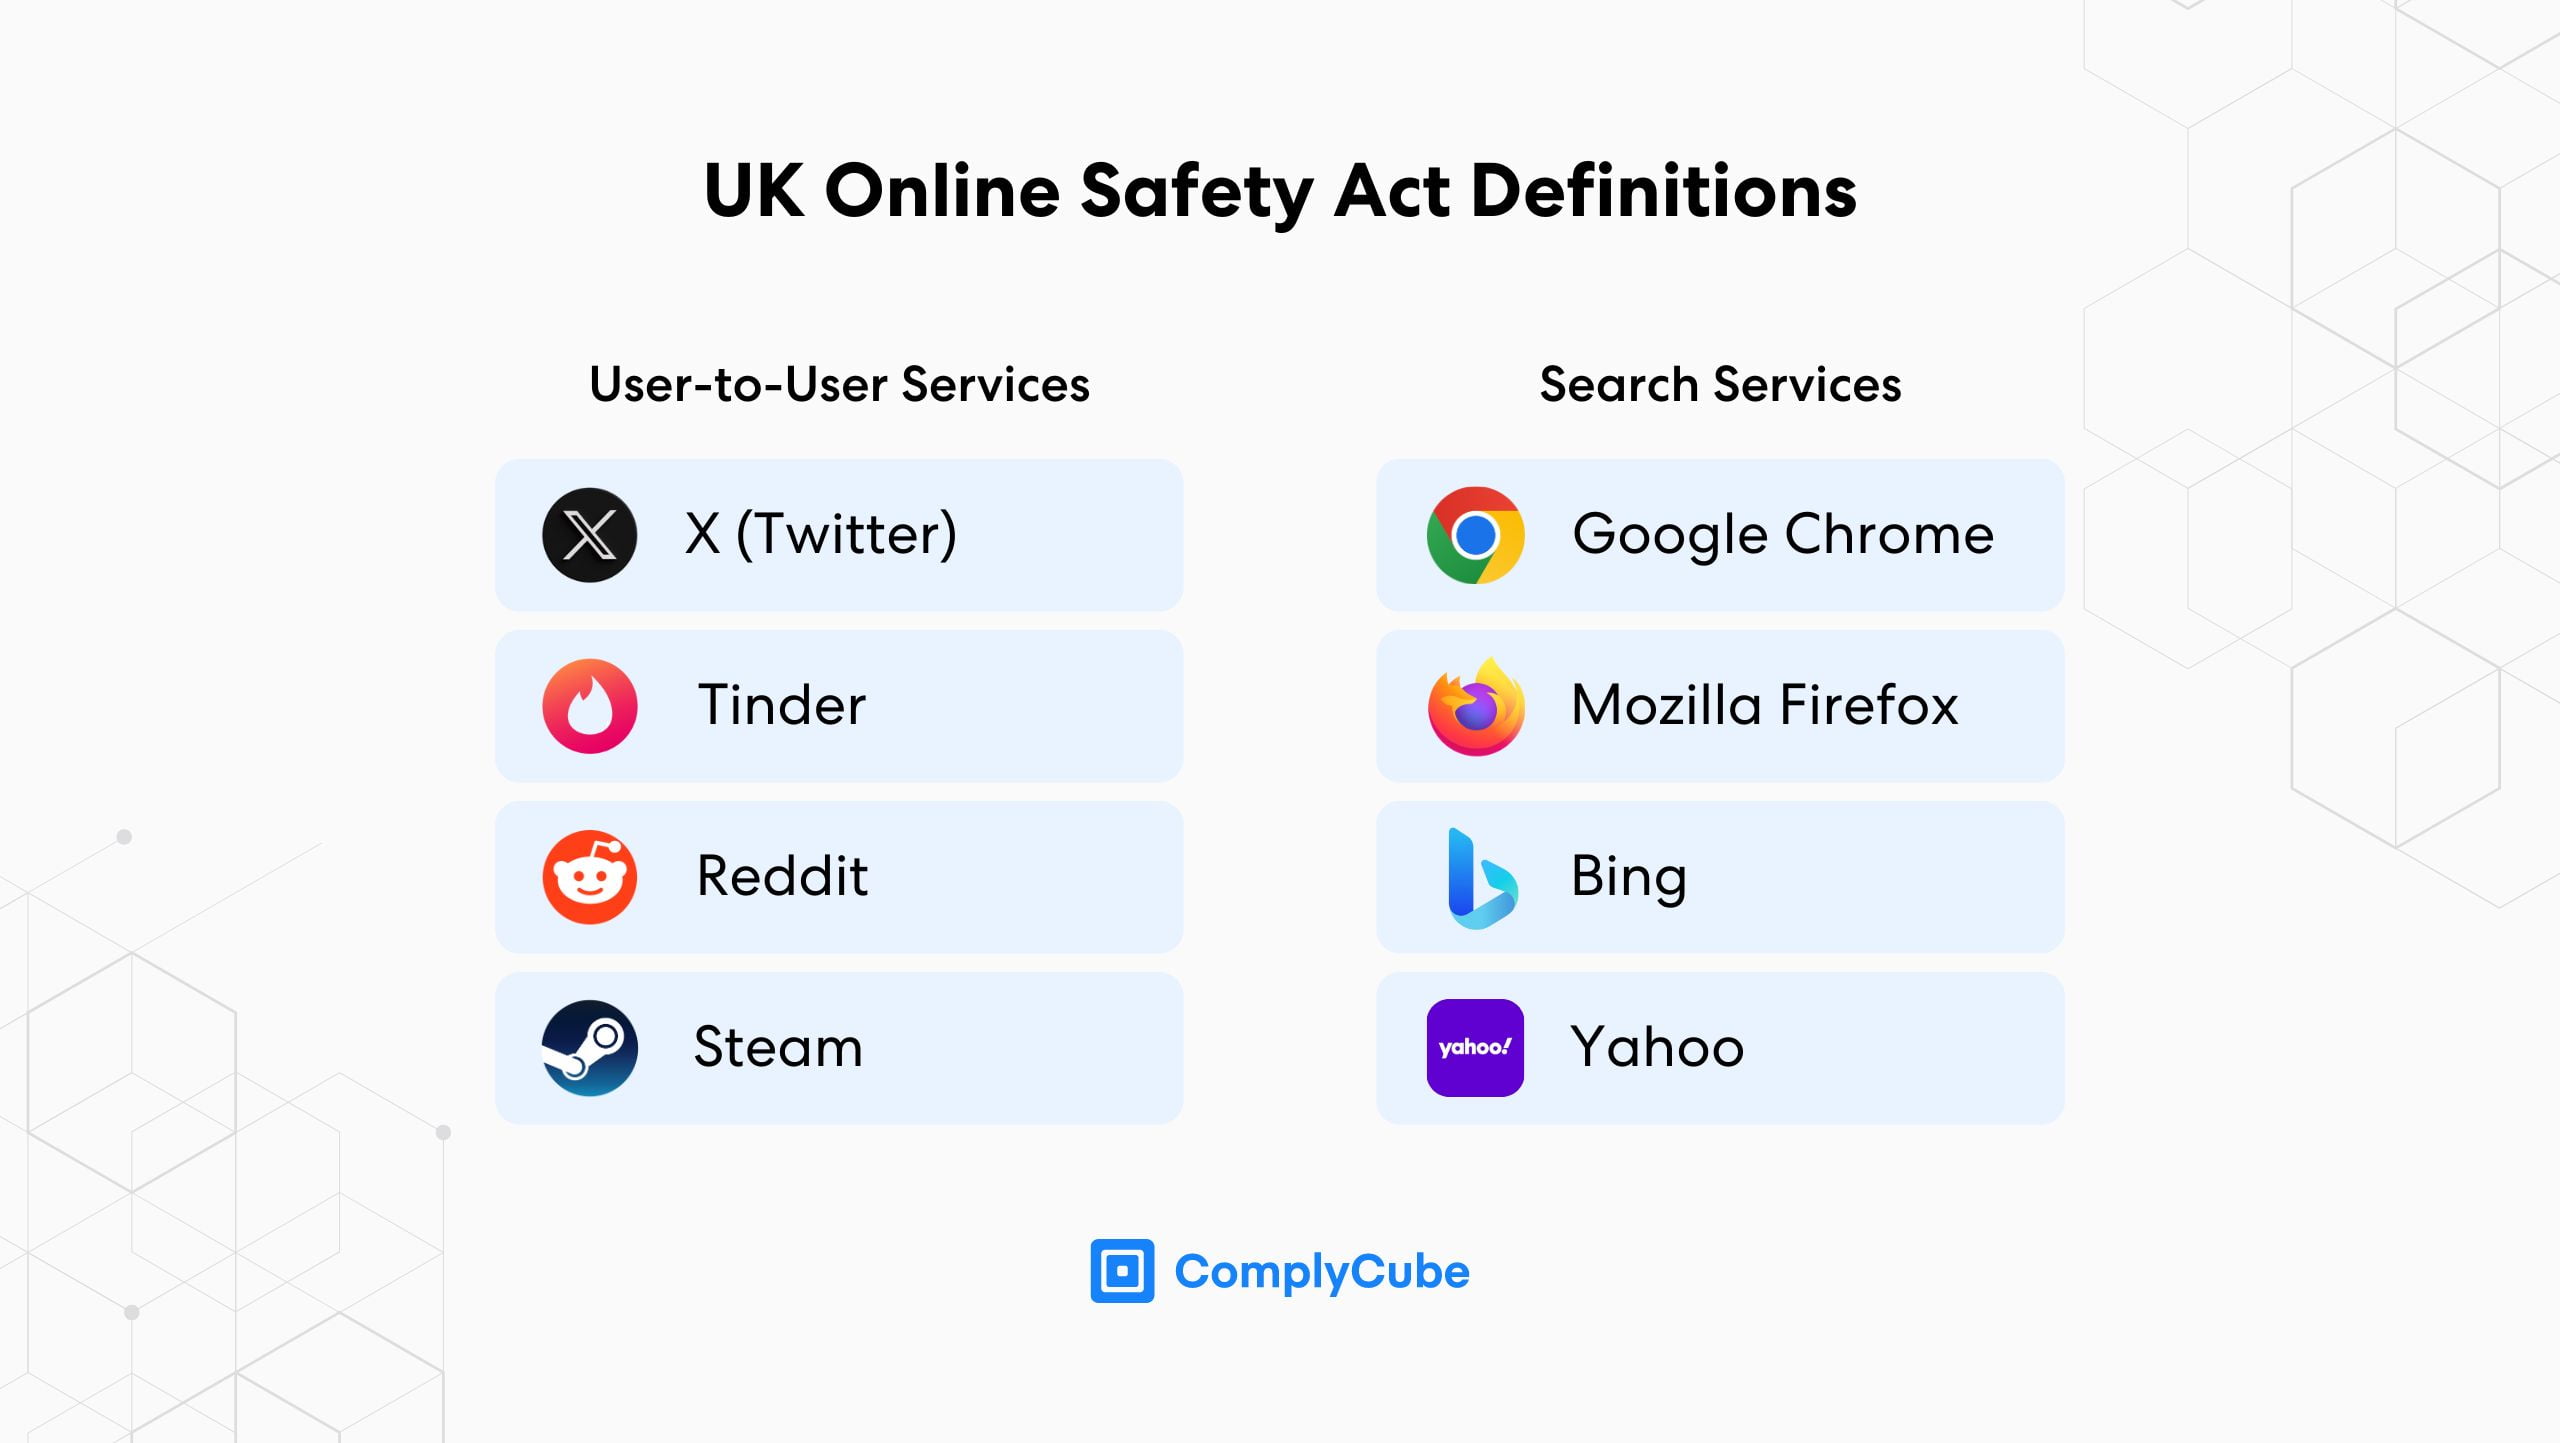 الخدمات المنظمة بموجب قانون السلامة عبر الإنترنت في المملكة المتحدة والتي ستحتاج إلى تقديم نظام للتحقق من العمر والهوية.